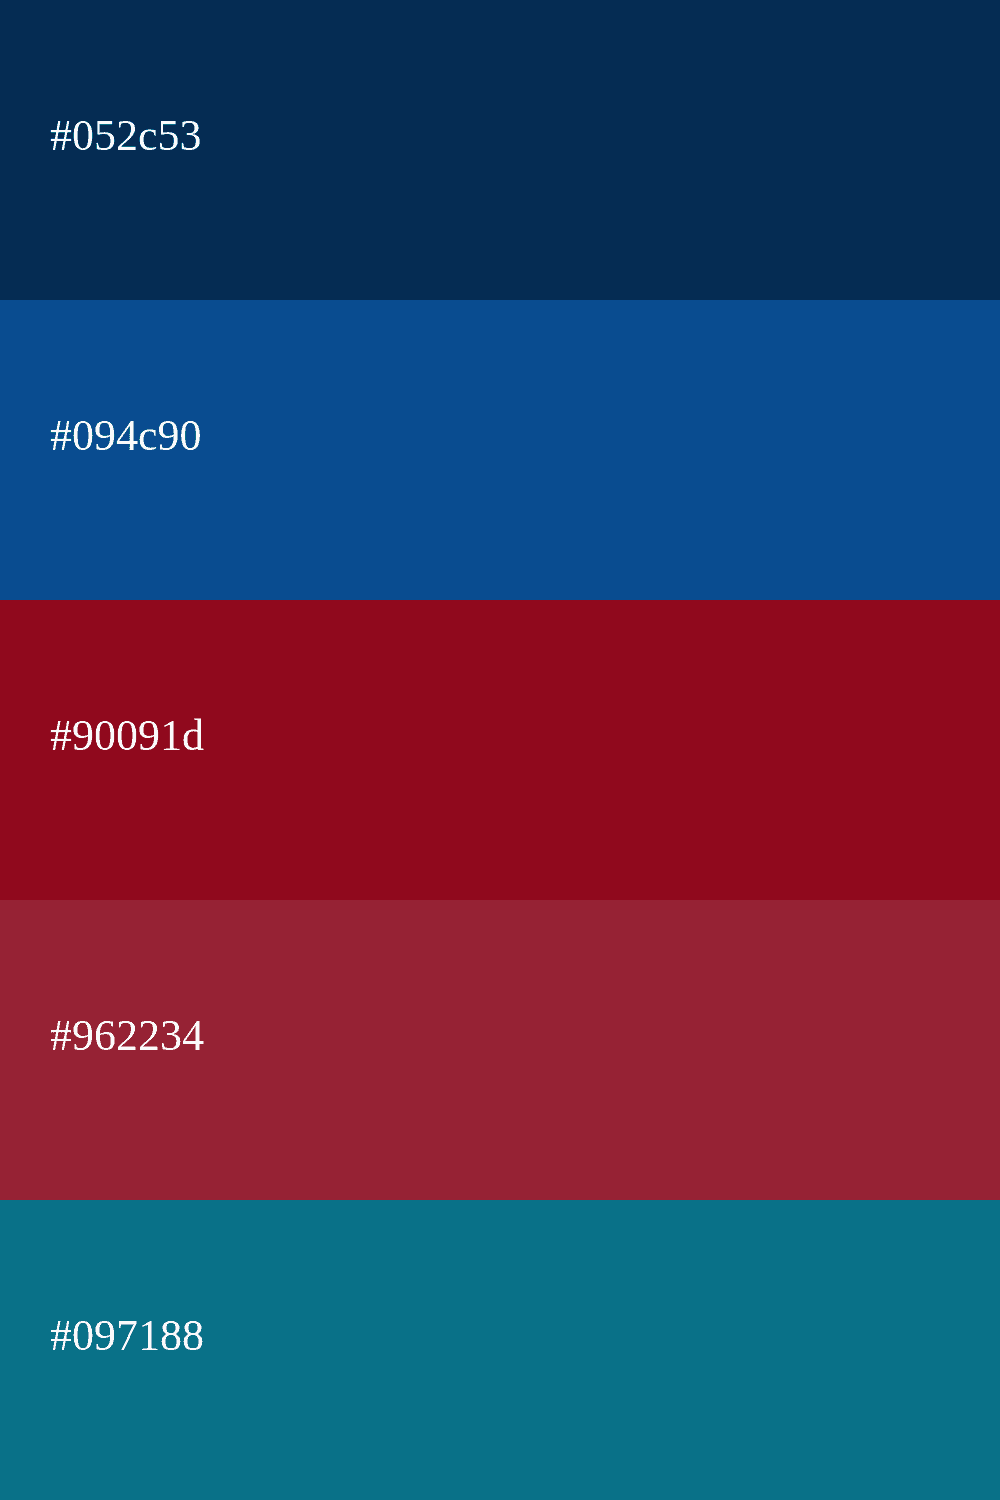 paleta de cores com azul escuro e vermelho